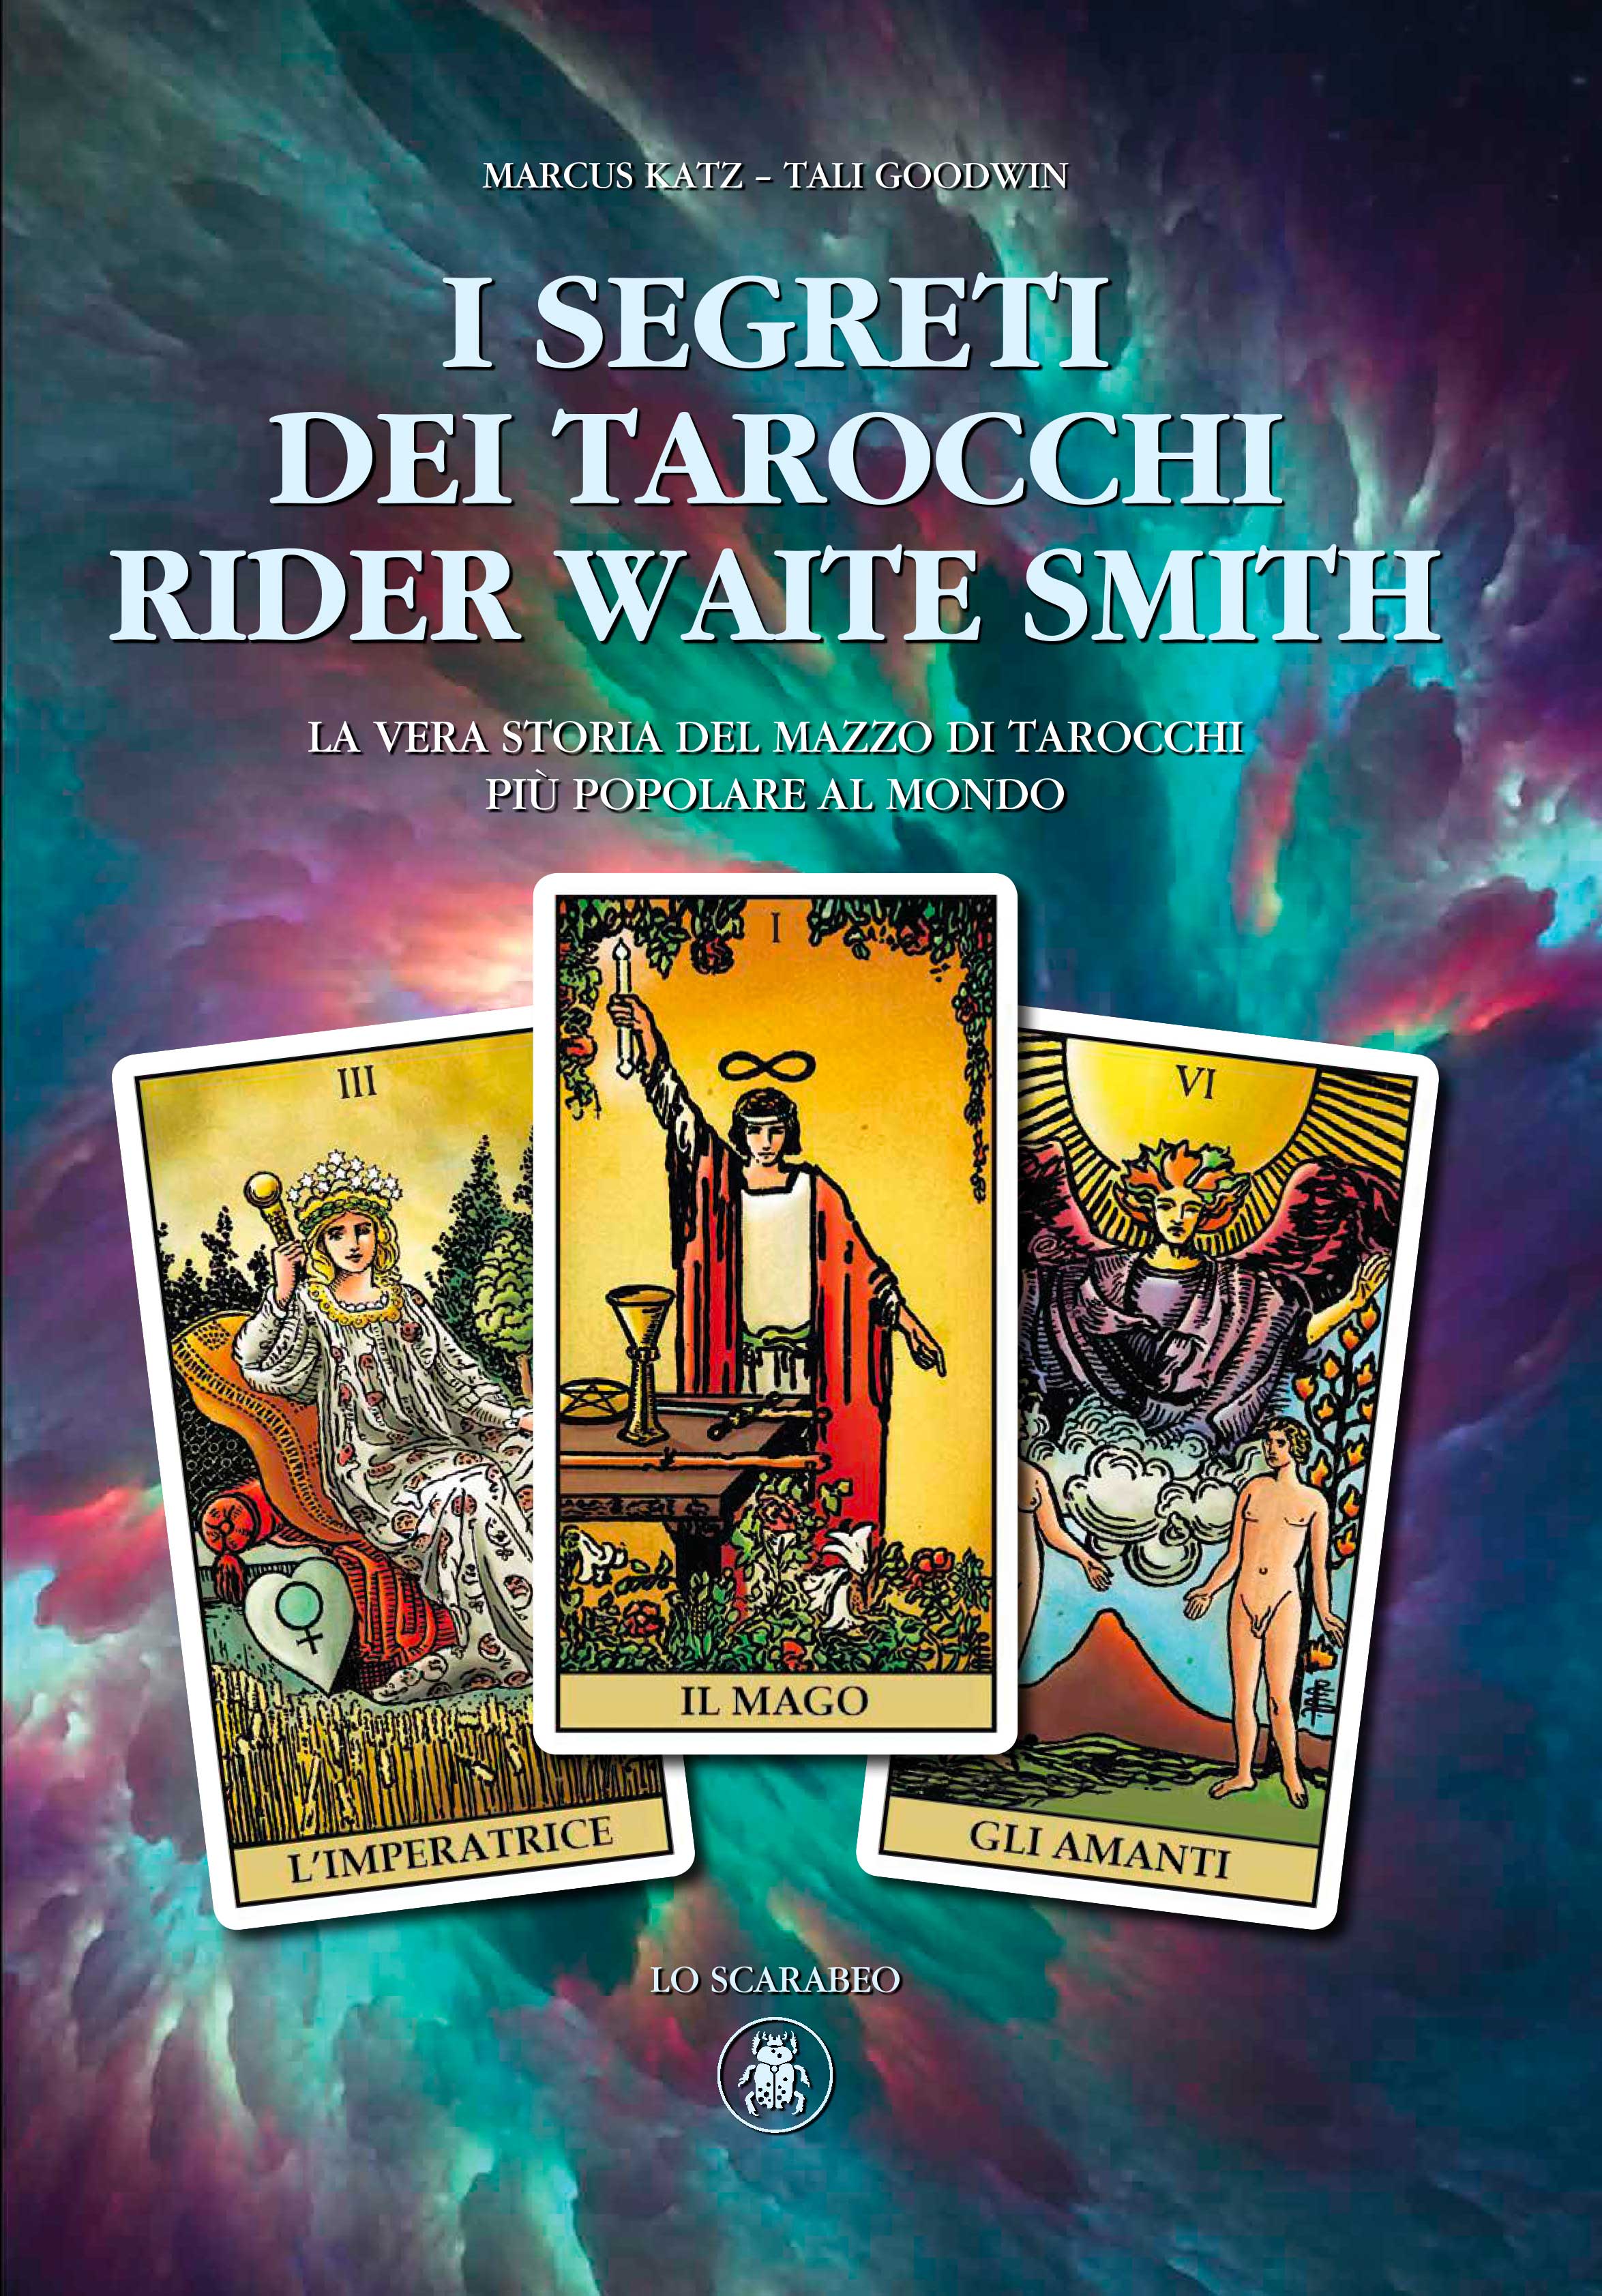 The secrets of the Rider Waite Smith Tarot